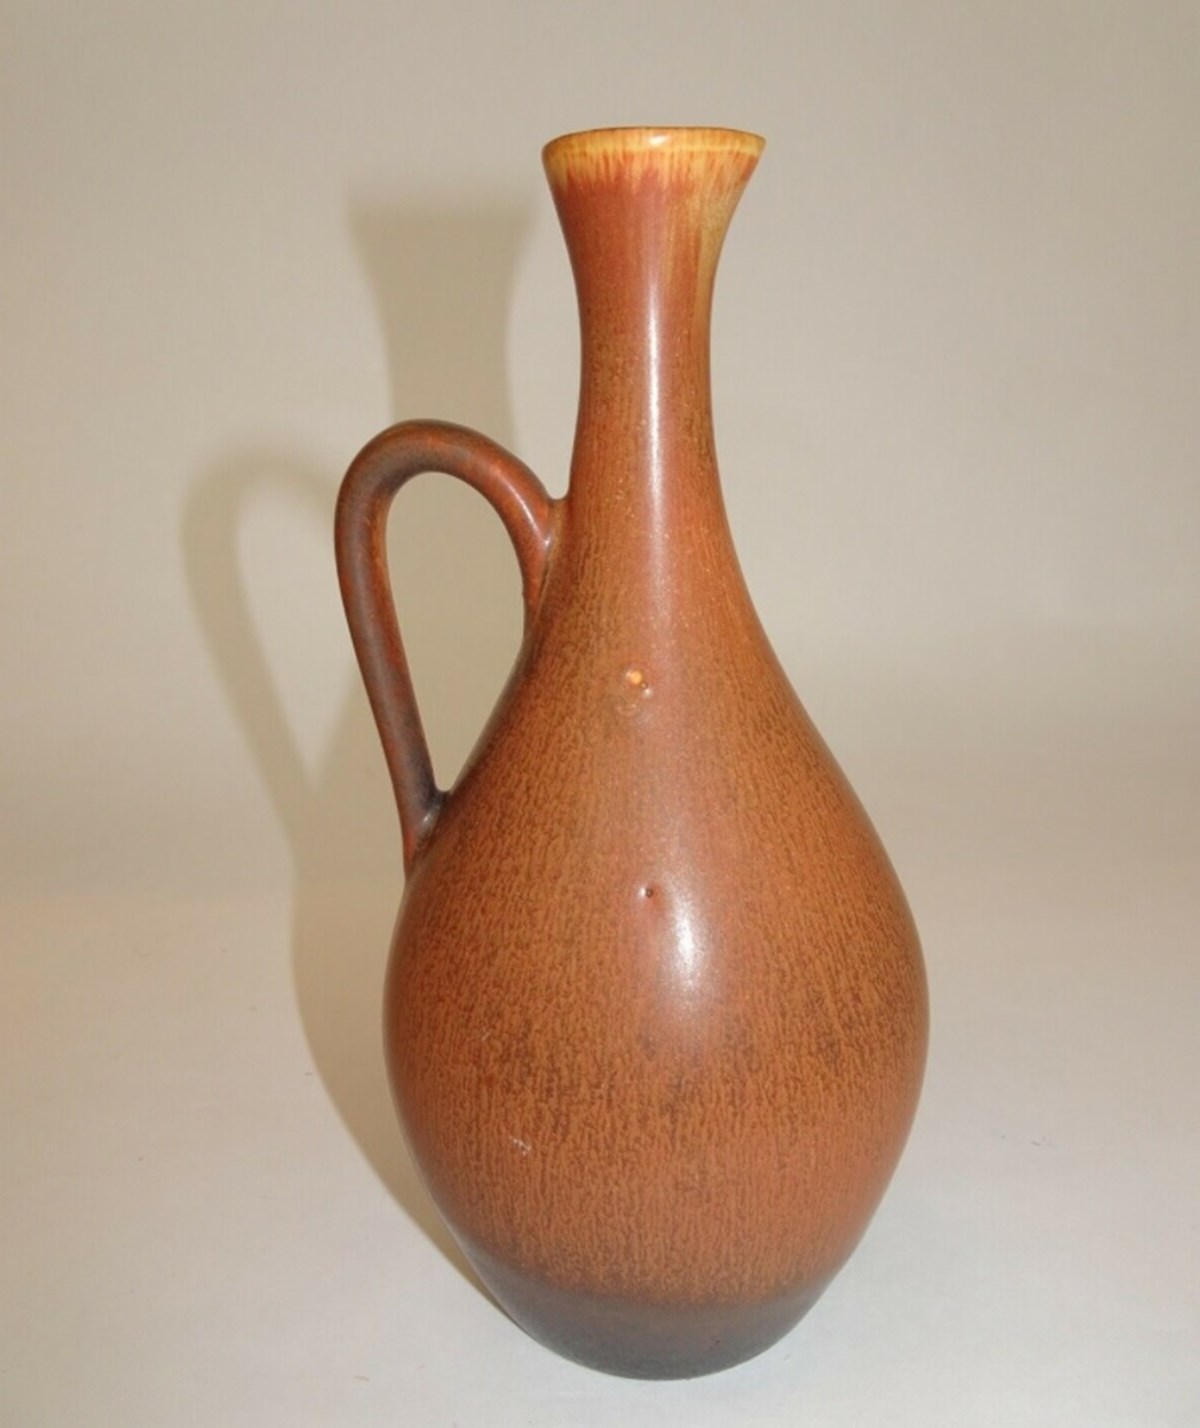 Elsebeth har sat denne brune keramikvase til salg på DBA. Vasen koster 700 kroner, hvis du køber den af Elsebeth, der bor i København S. Vasen er formgivet af Carl-Harry Stålhane for svenske Rörstrand